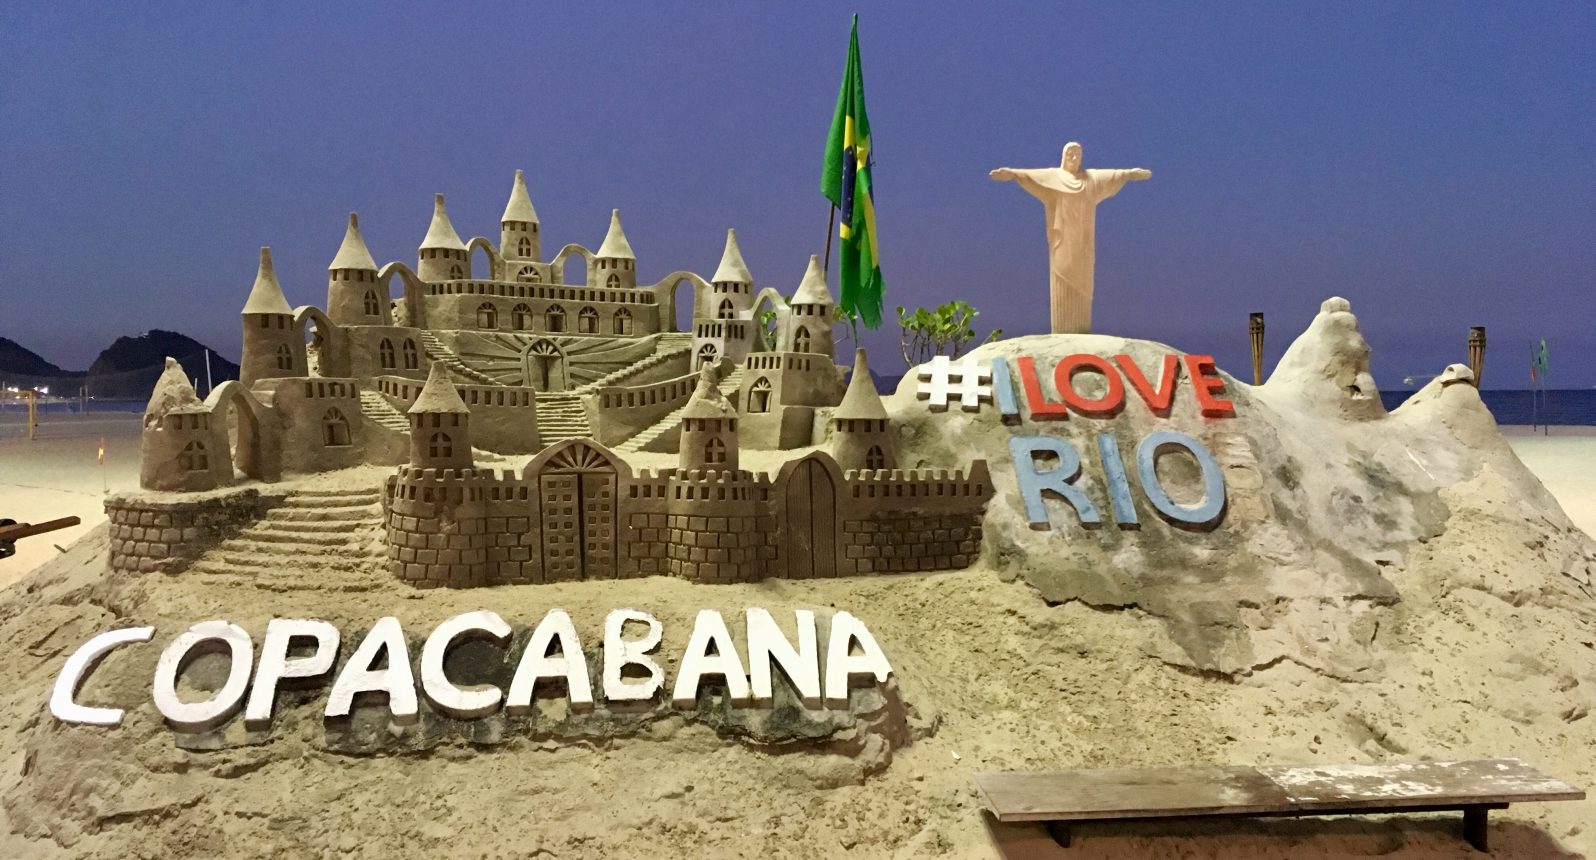 Stunning sand sculptures on Copacabana beach, Rio de Janeiro, Brazil